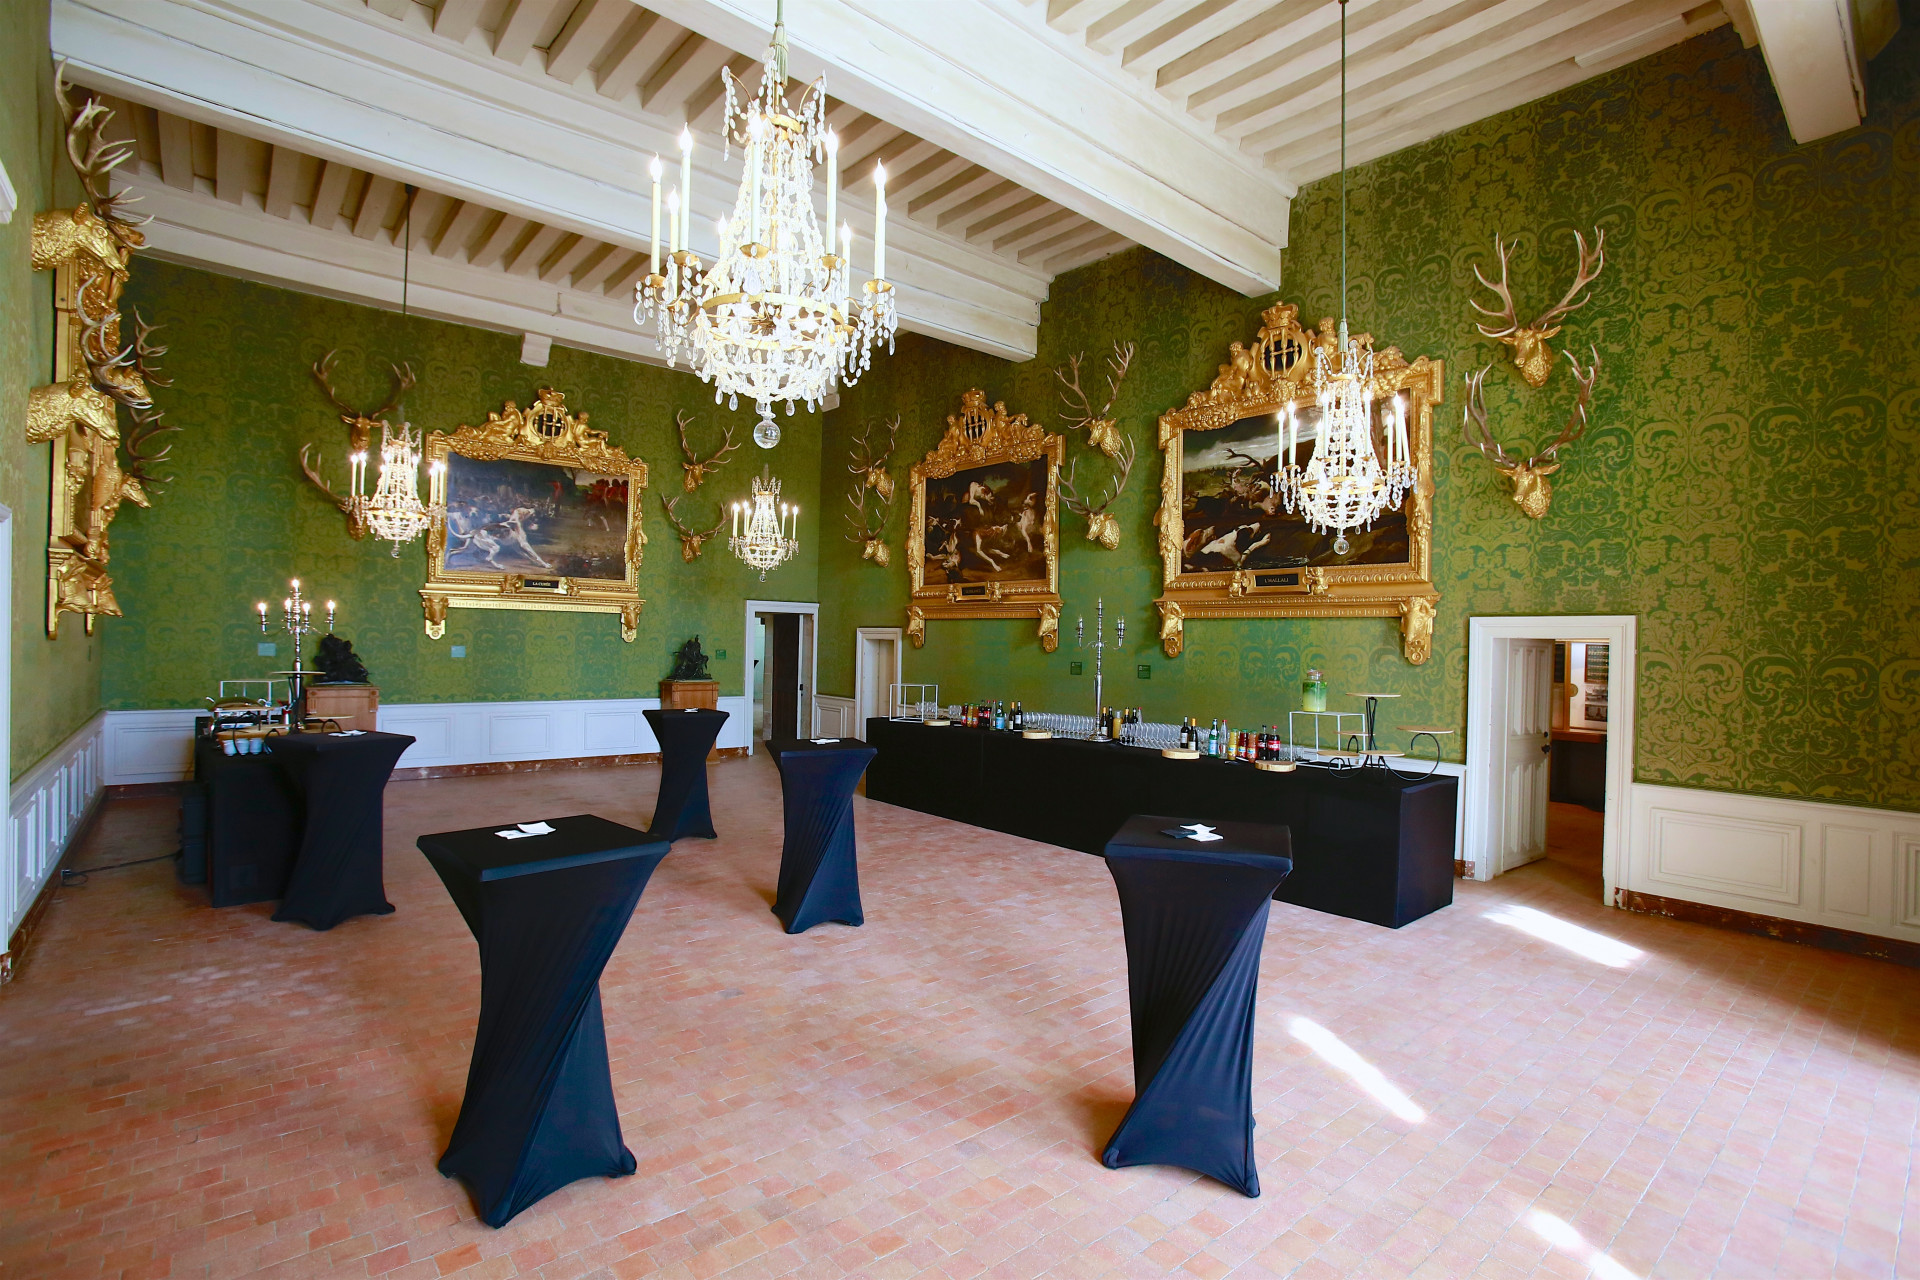 Location de salle et séminaire au Château de Chambord